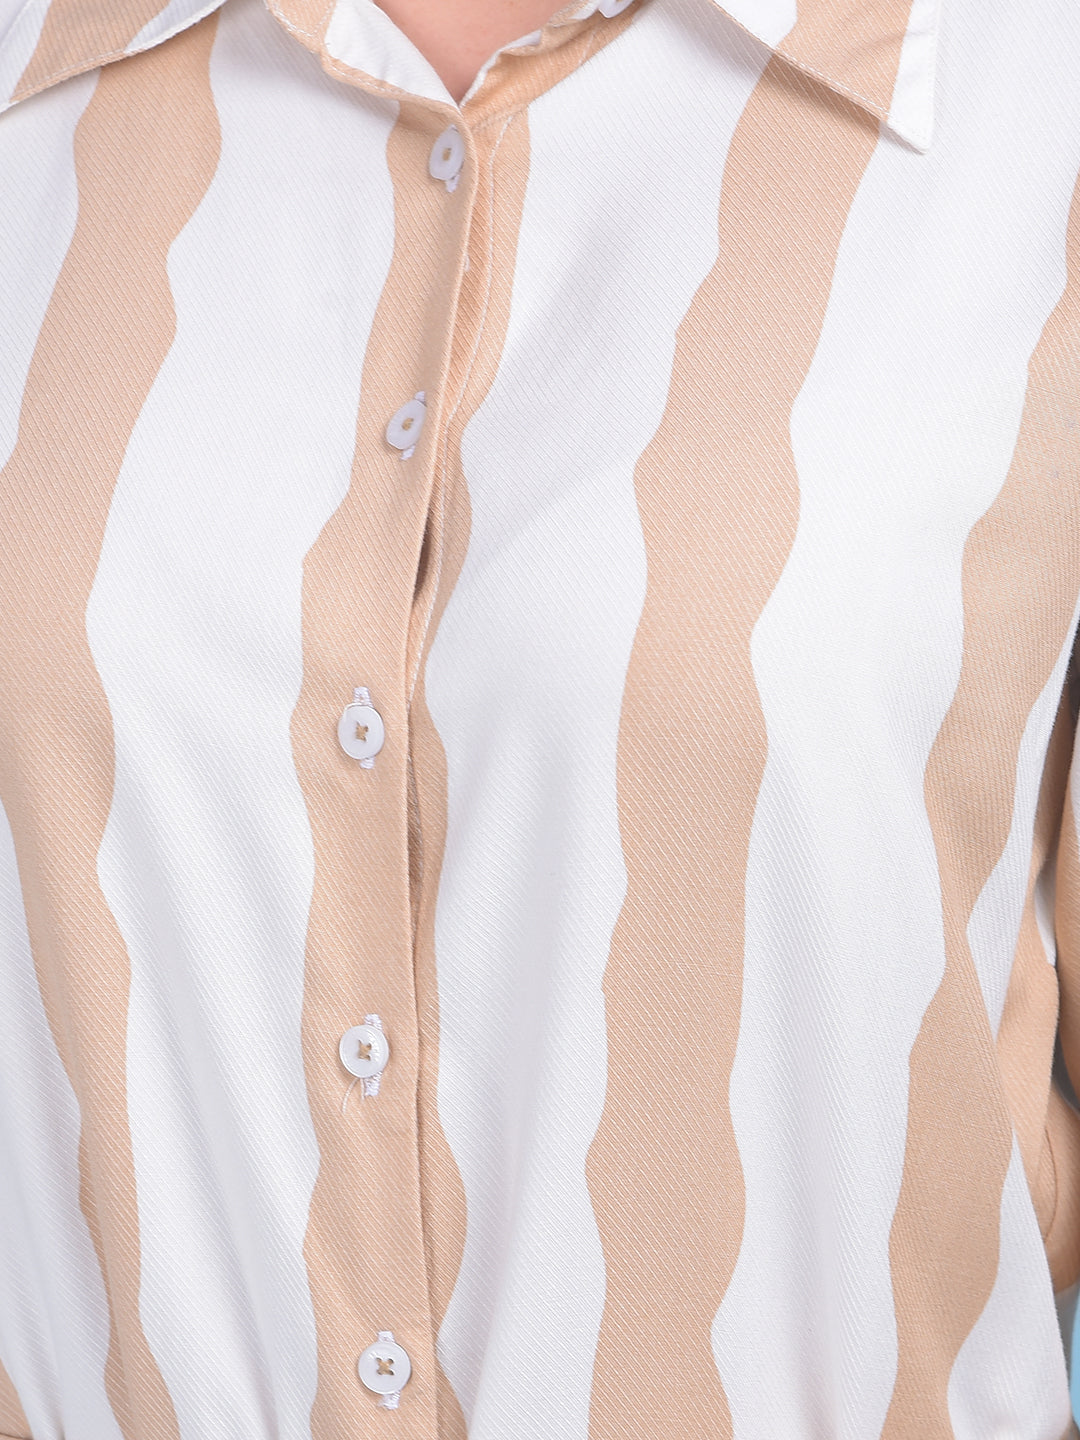 Beige Vertical Striped Shirt Dress-Women Dresses-Crimsoune Club